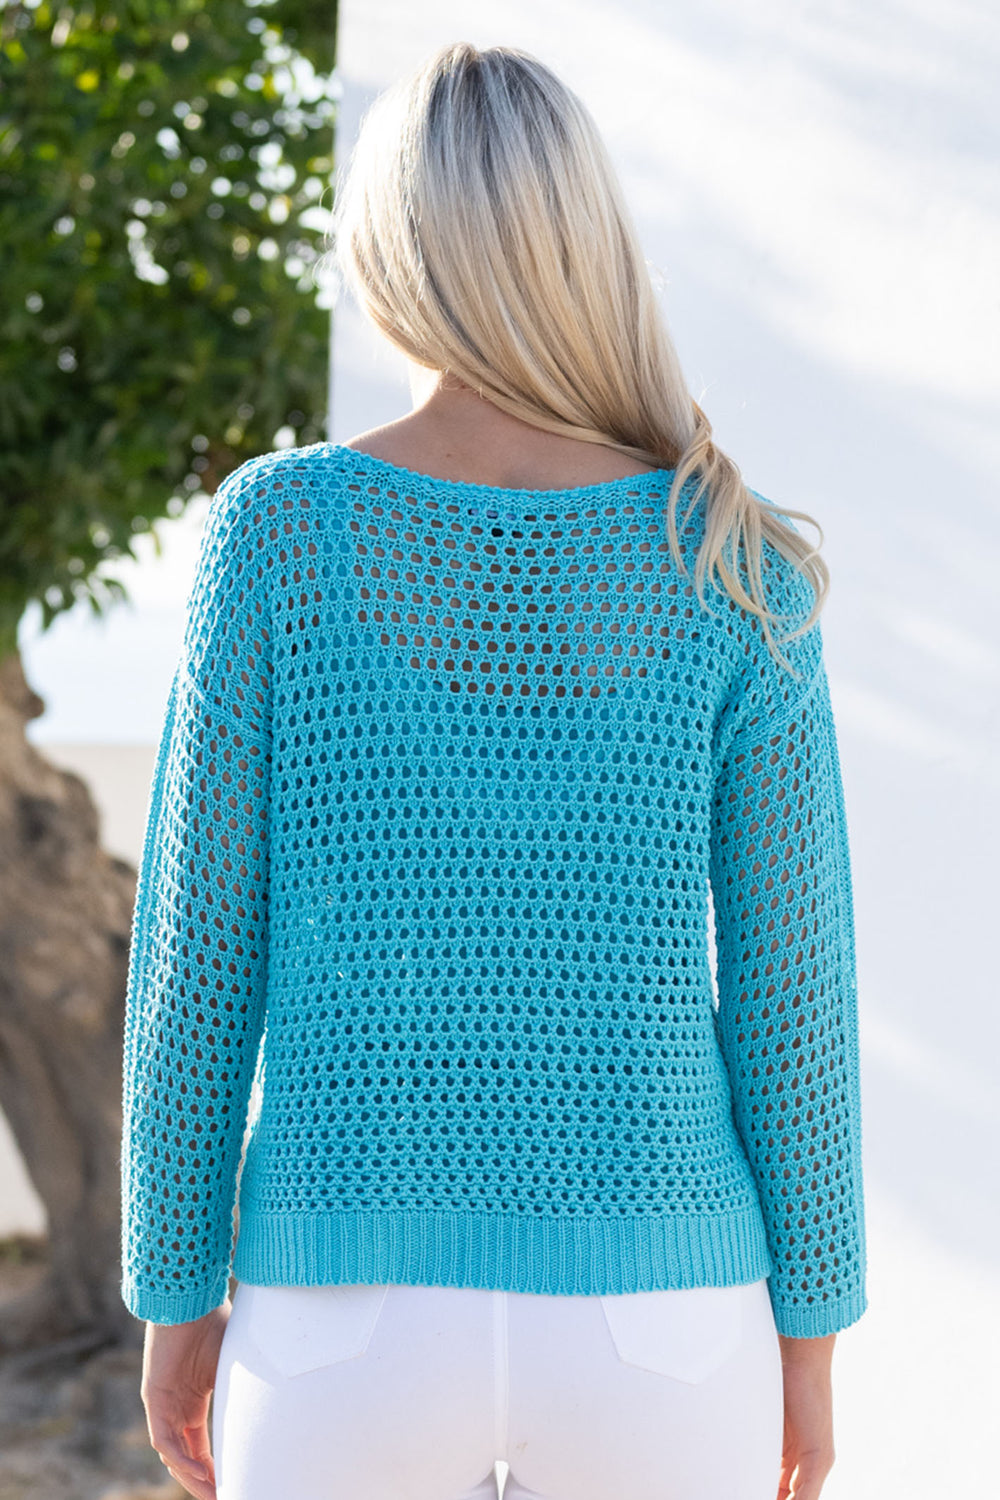 Marble Fashions 6915 151 Aqua Crochet Top & Vest Set - Experience Boutique